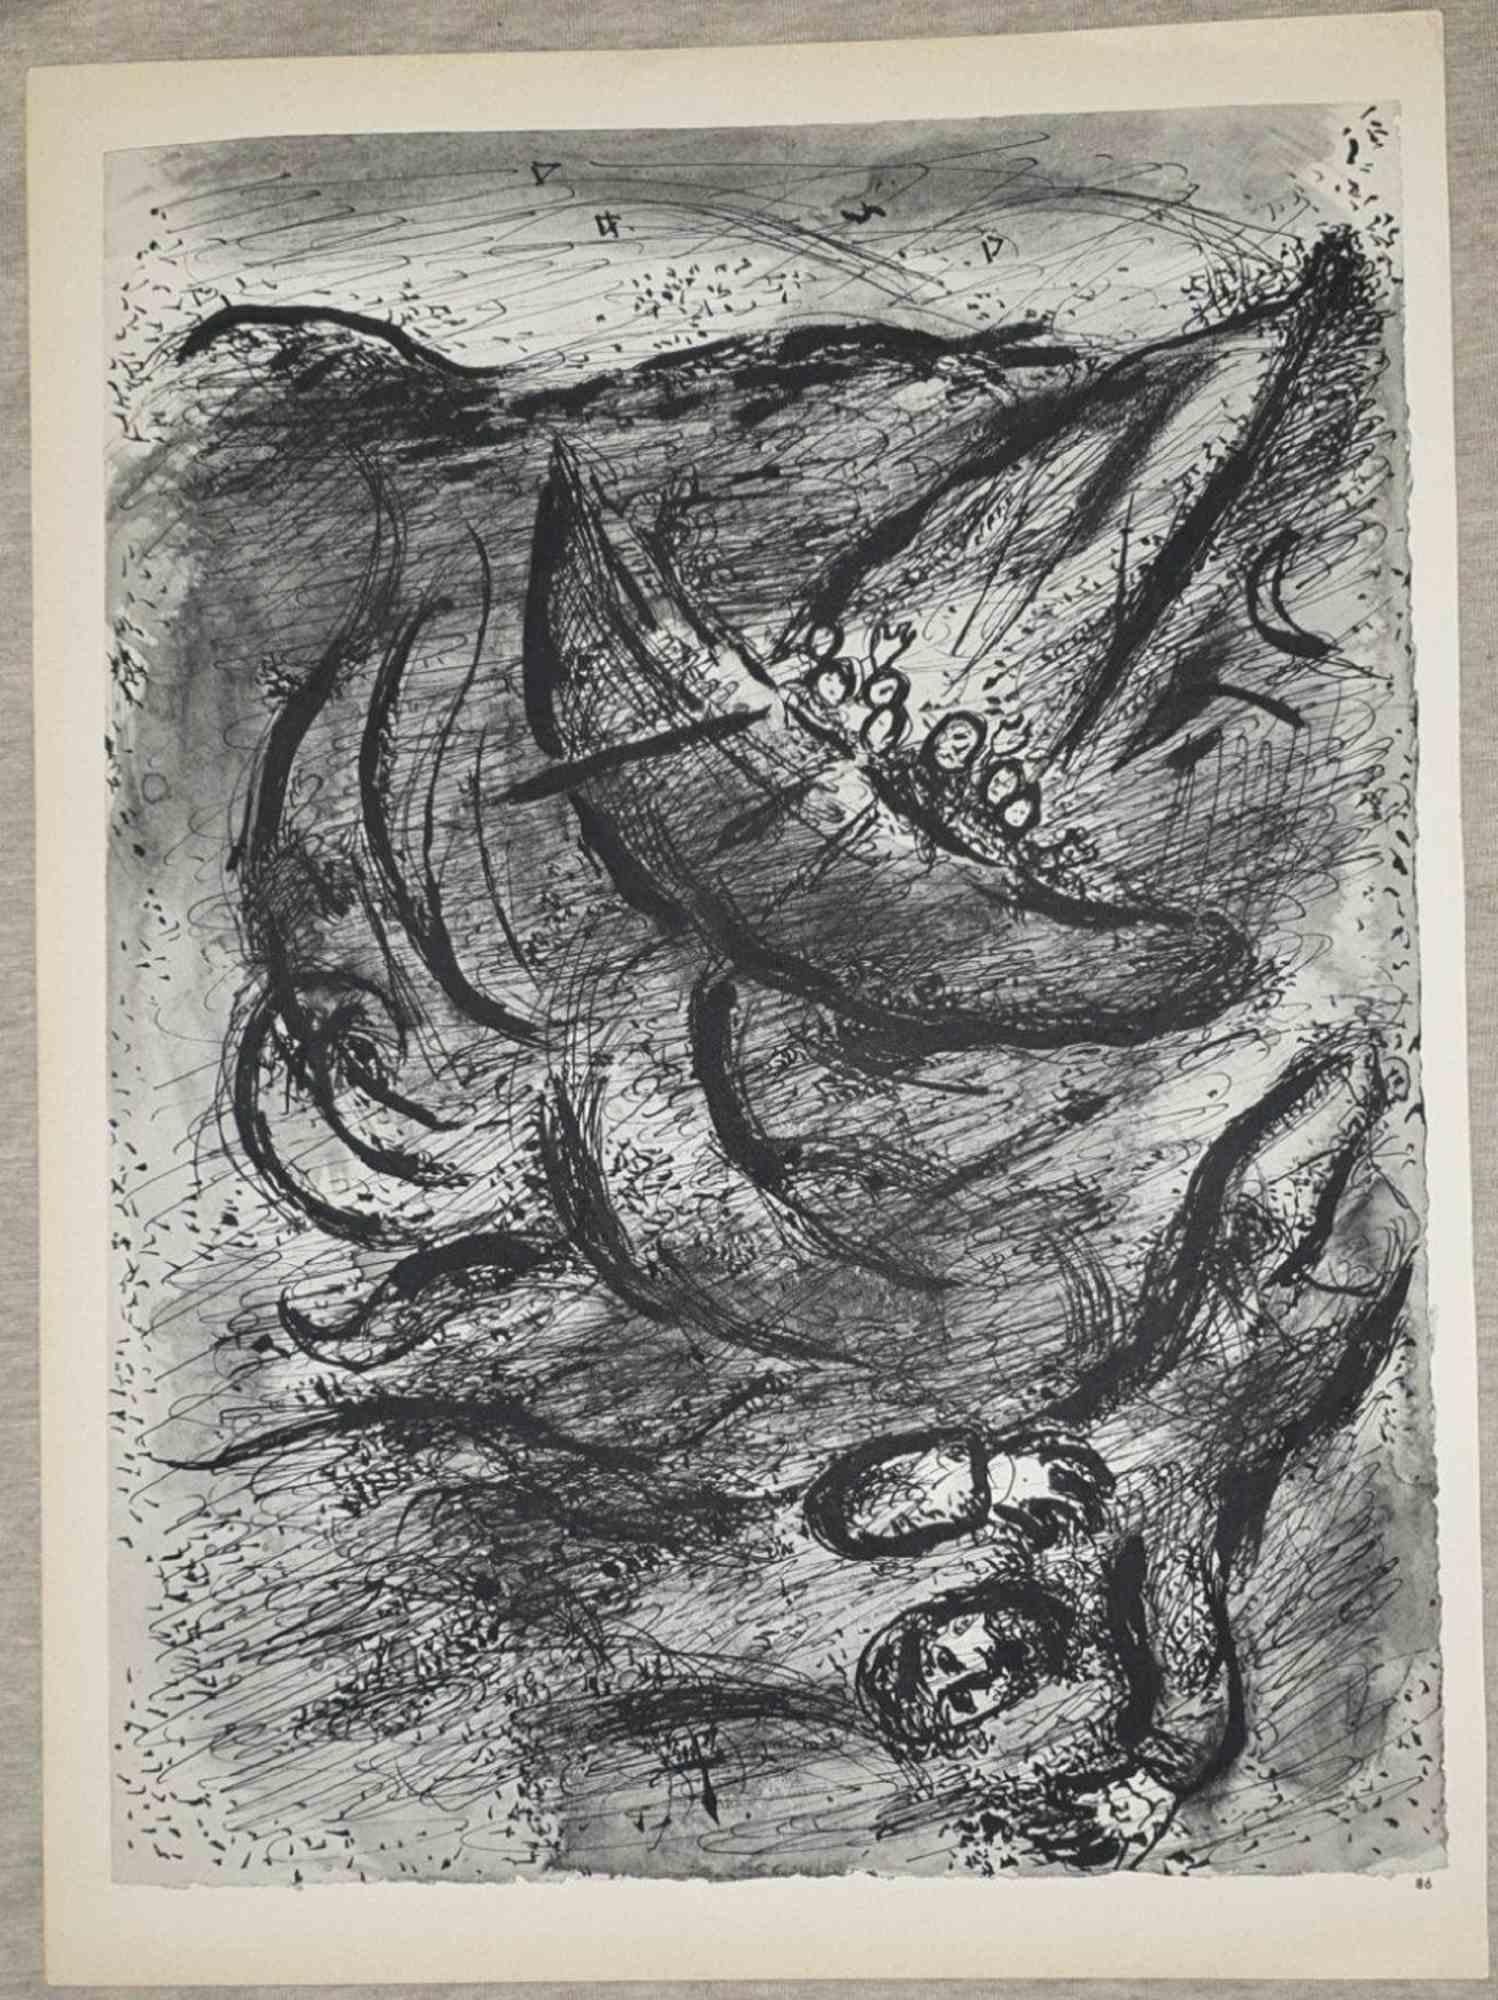 Jona ist ein Kunstwerk von March Chagall aus den 1960er Jahren.

Lithographie auf braun getöntem Papier, ohne Signatur.

Beidseitige Lithographie.

Auflage von 6500 unsignierten Lithografien. Gedruckt von Mourlot und veröffentlicht von Tériade,